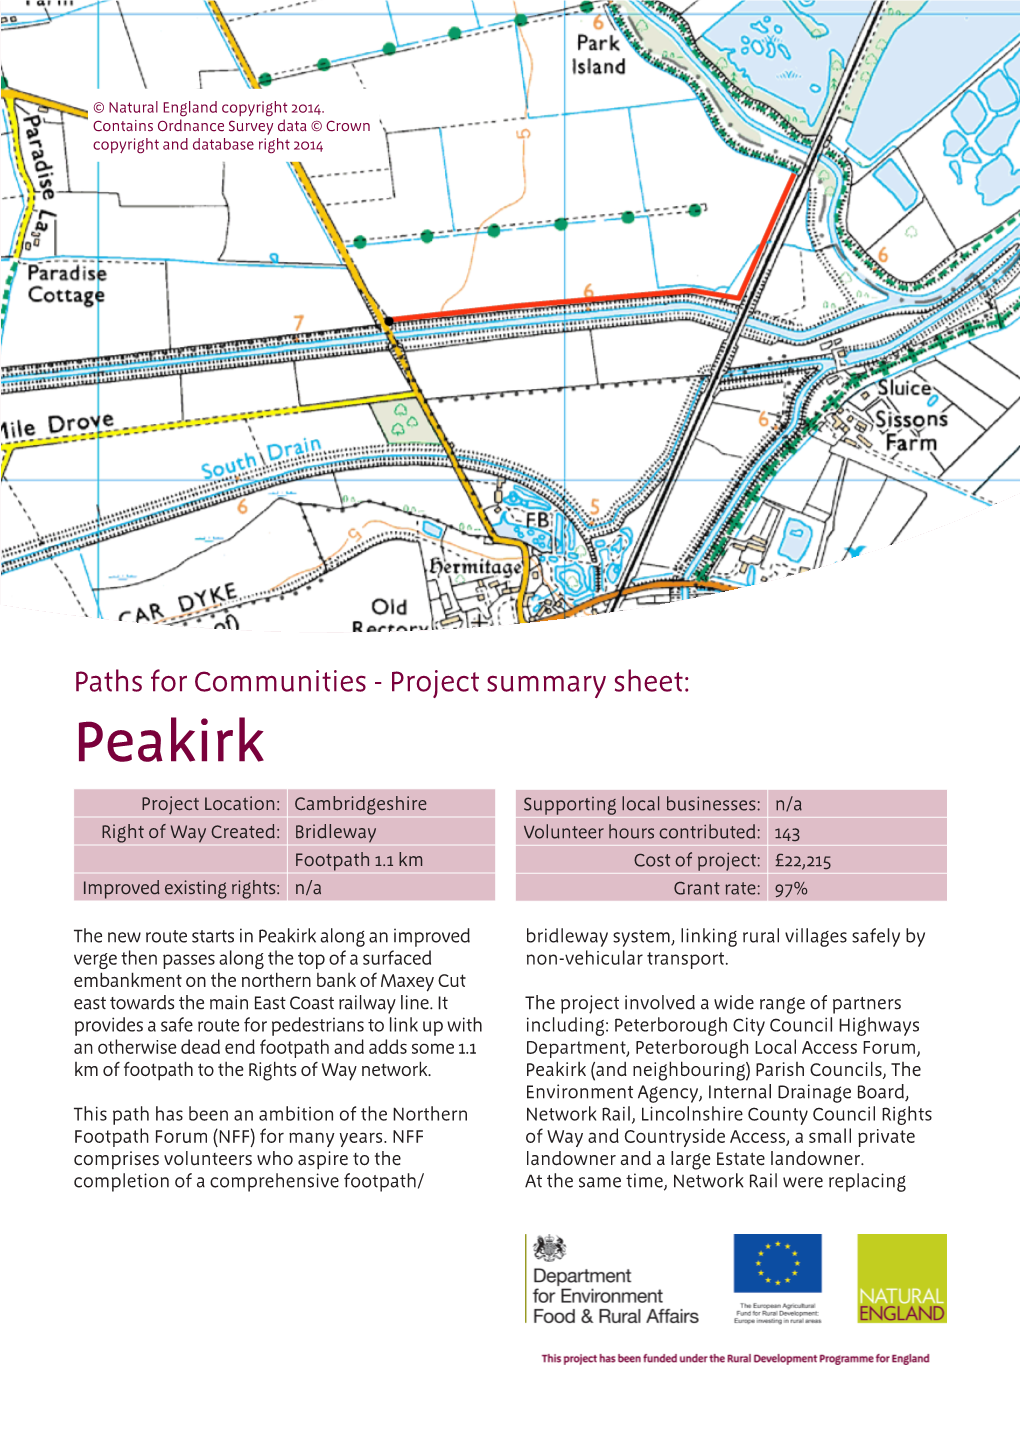 Peakirk P4C Summary